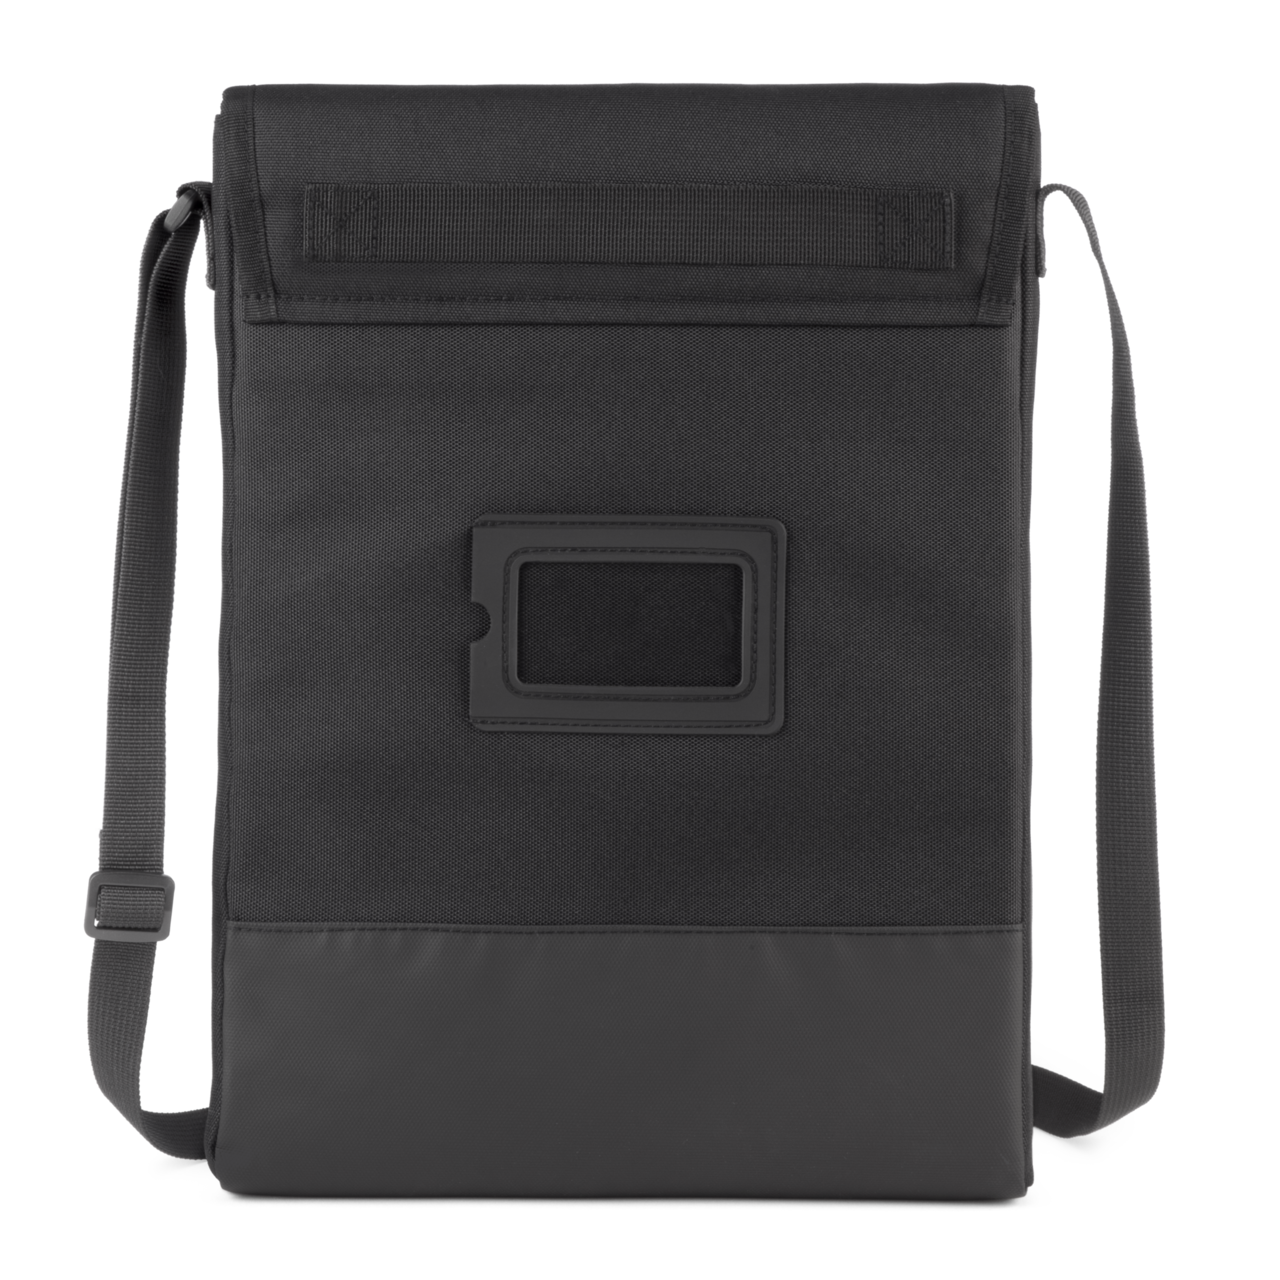 ZONAL Laptop Bag for Men/Backpack for Men| Office Bag for Men/Women with  Padded Laptop 35 L Laptop Backpack Black - Price in India | Flipkart.com